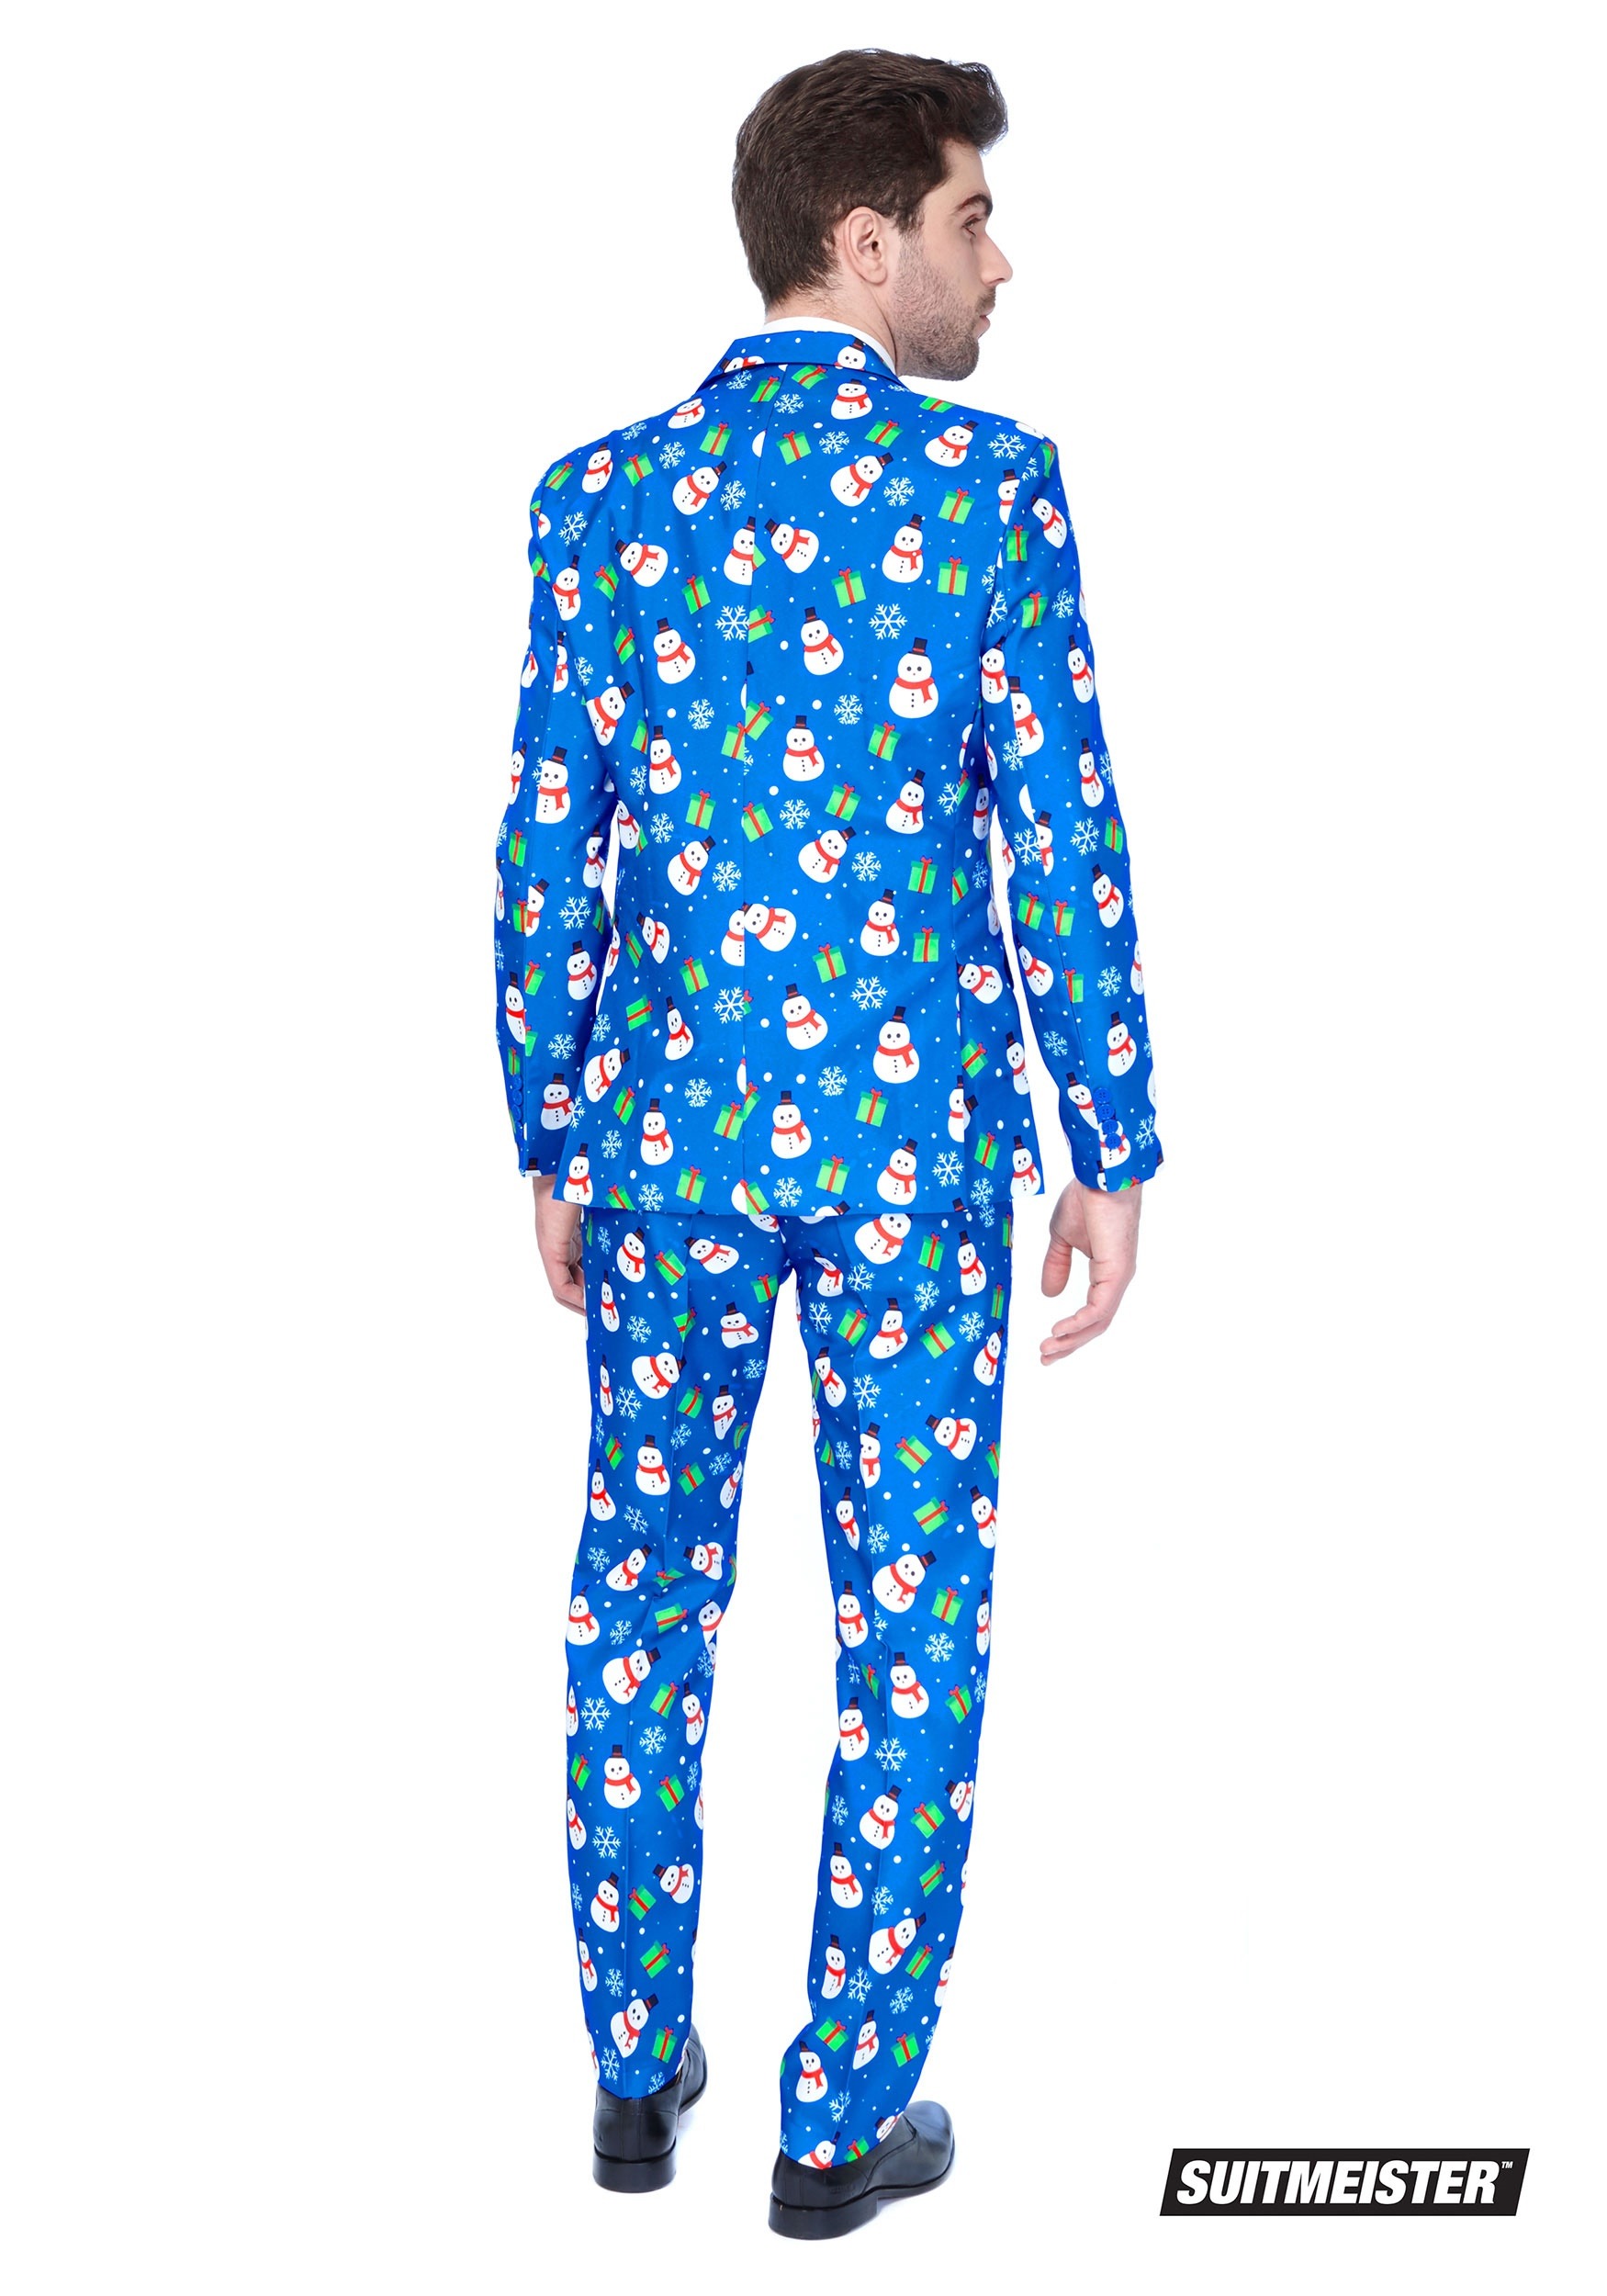 Men's Blue Snowman Suitmeister Suit